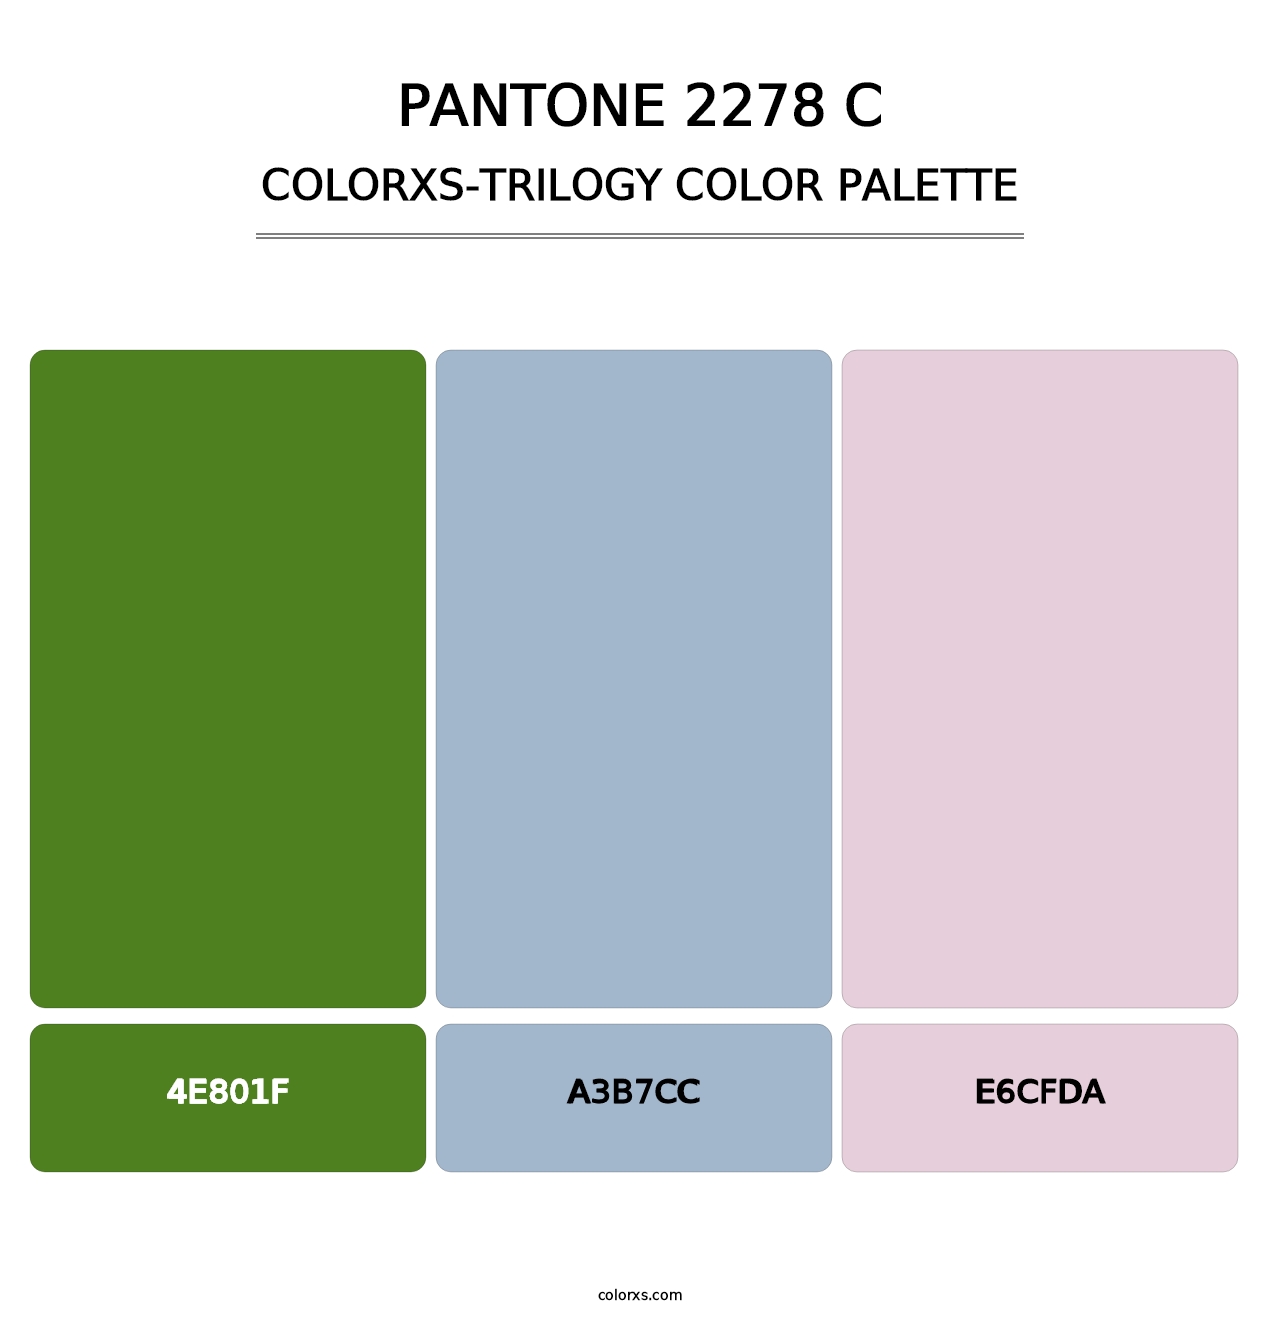 PANTONE 2278 C - Colorxs Trilogy Palette